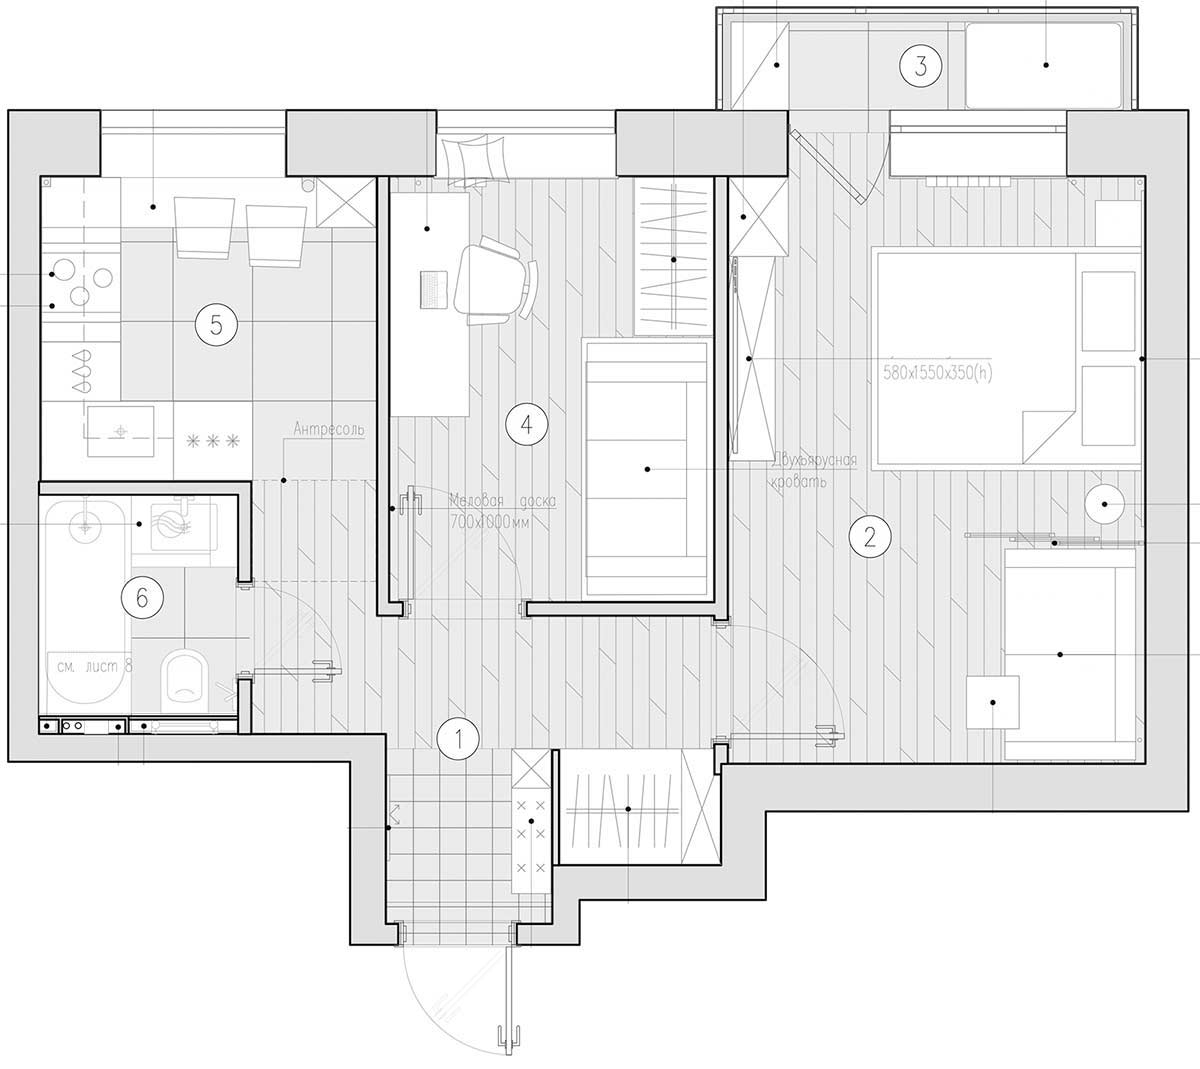 Család 39m2-es otthona gyerekszobával, praktikus, modern elosztással és berendezéssel